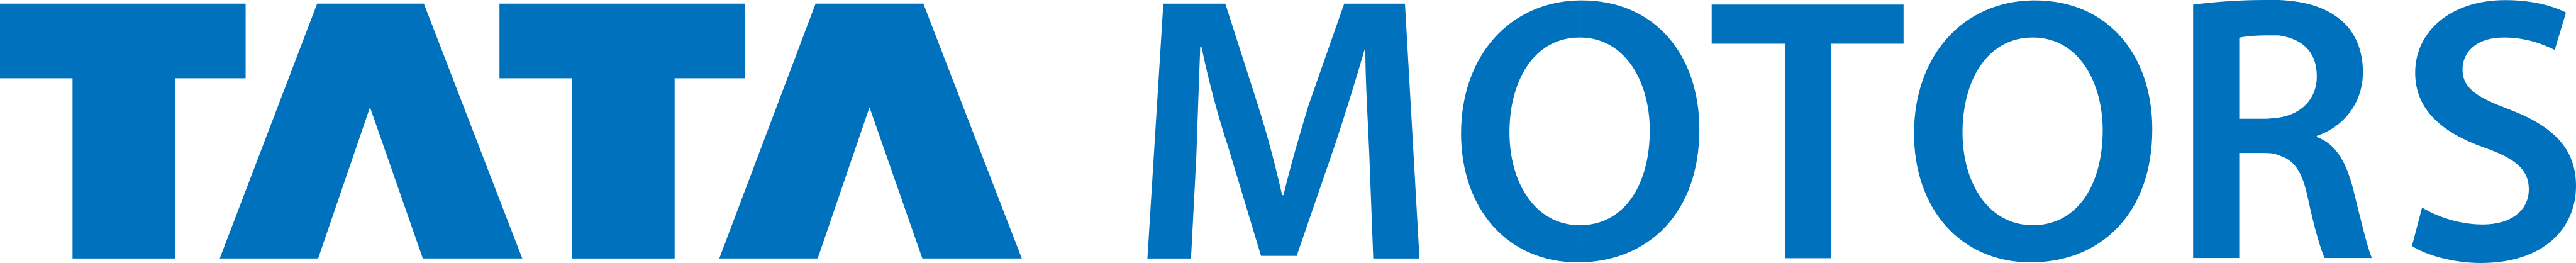 tata motors logo - Tata Motors Logo